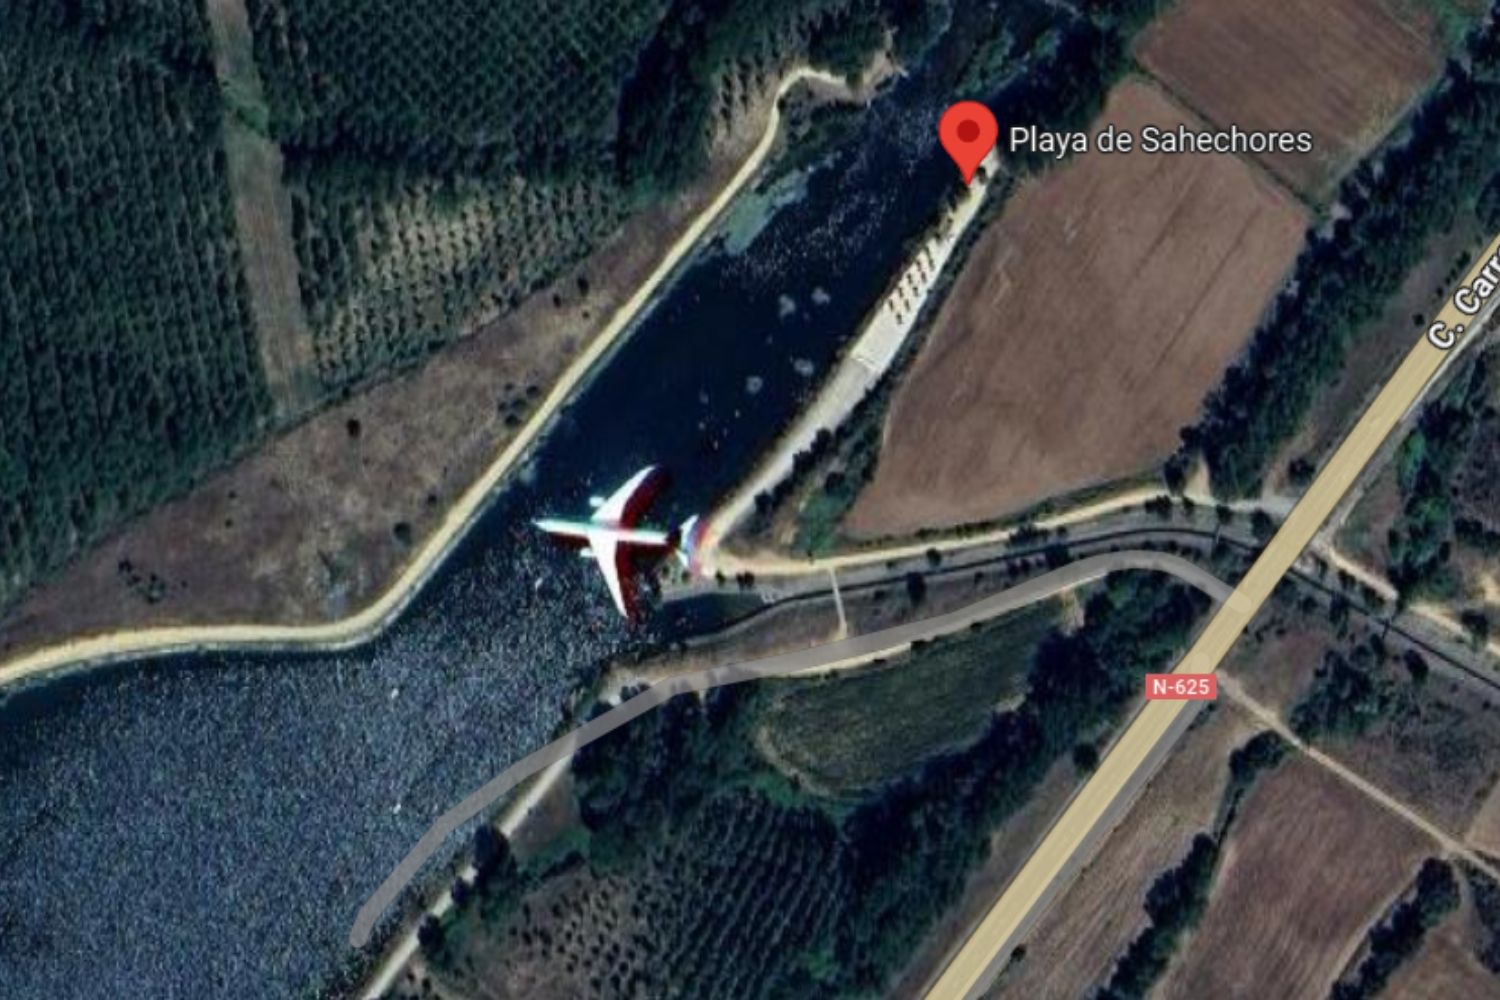 Google Maps detecta un extraño avión en el Lago Sahechores (León)